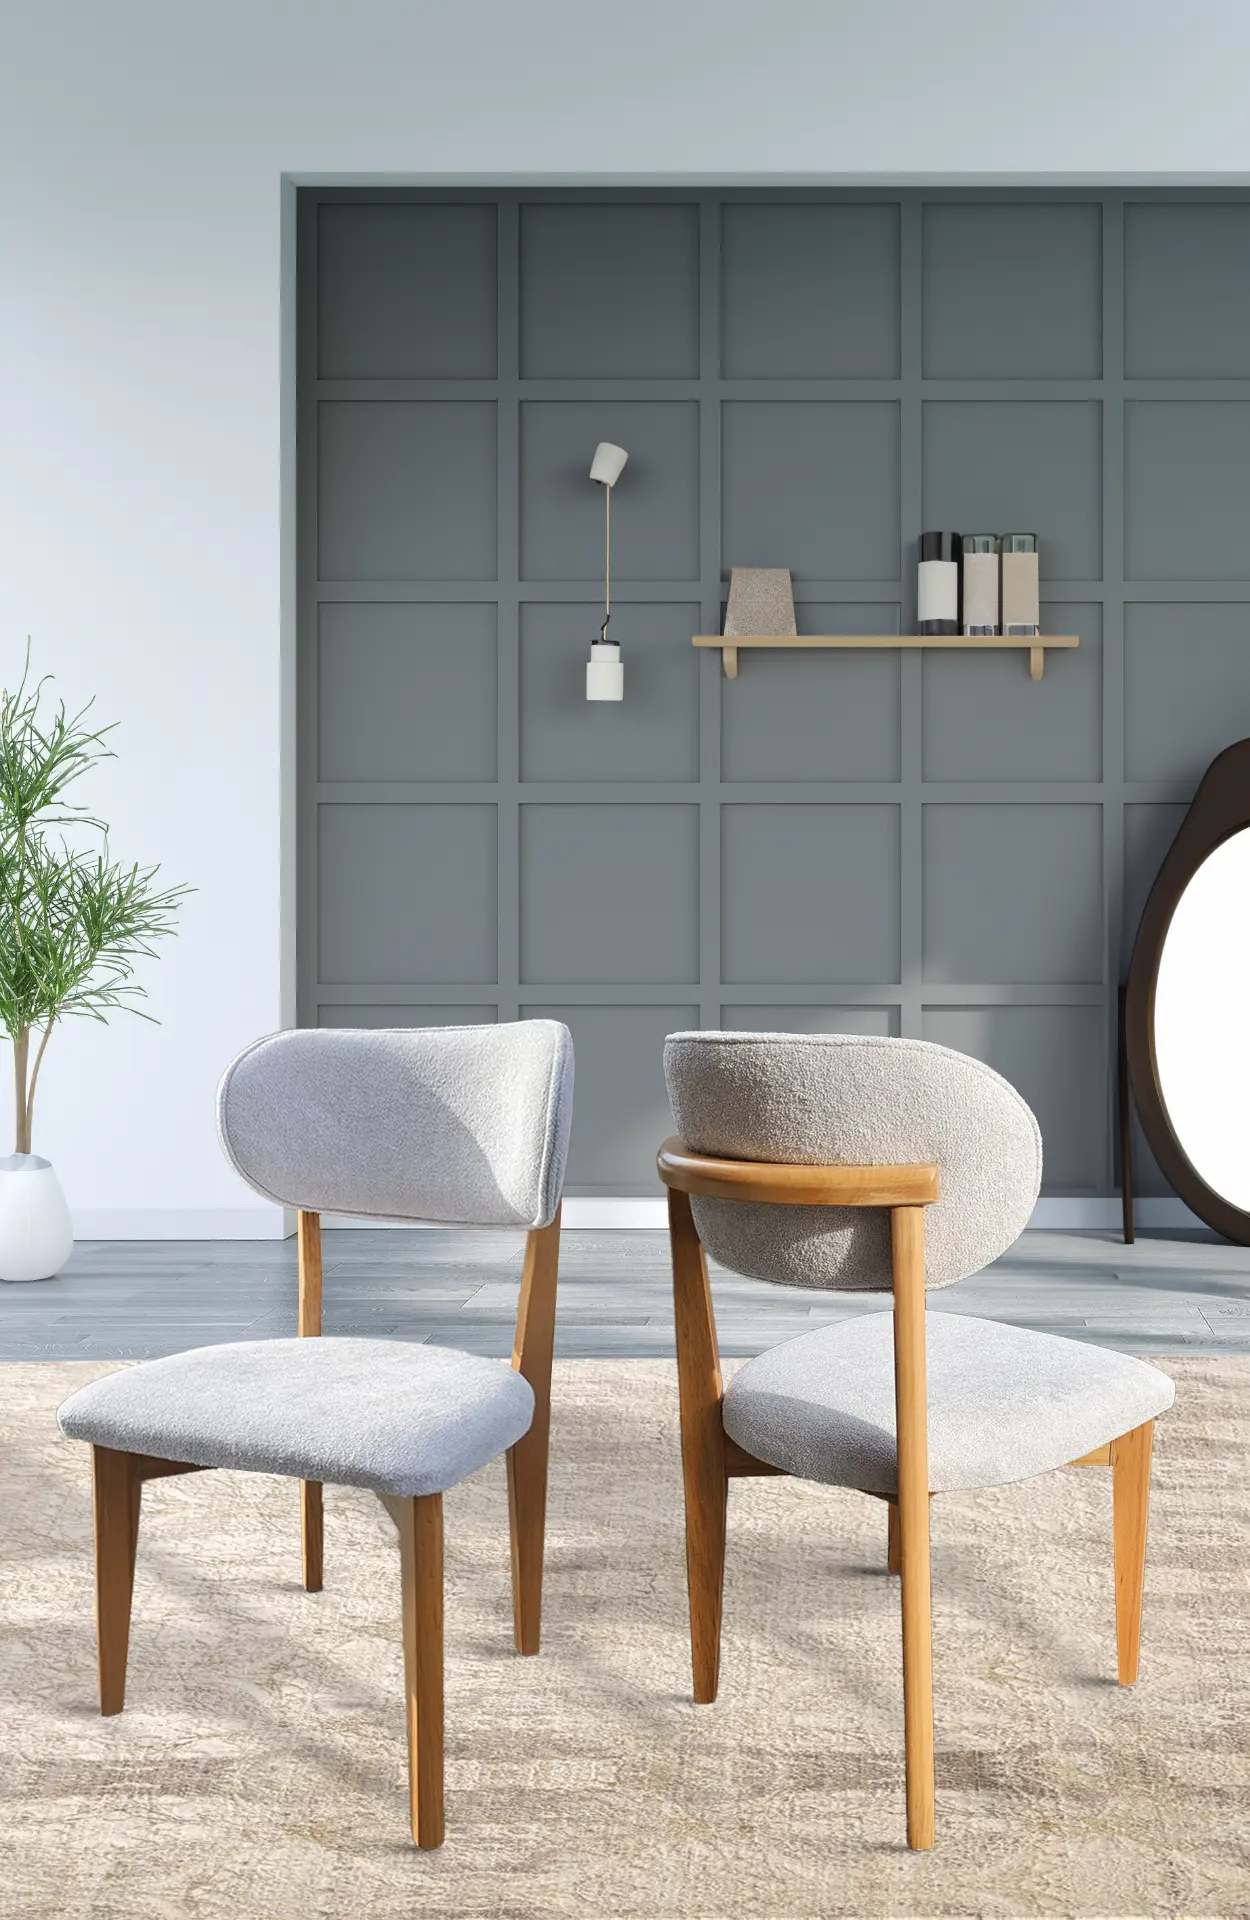 Hadsten Wooden Chair Scandinavian Design Dining Room